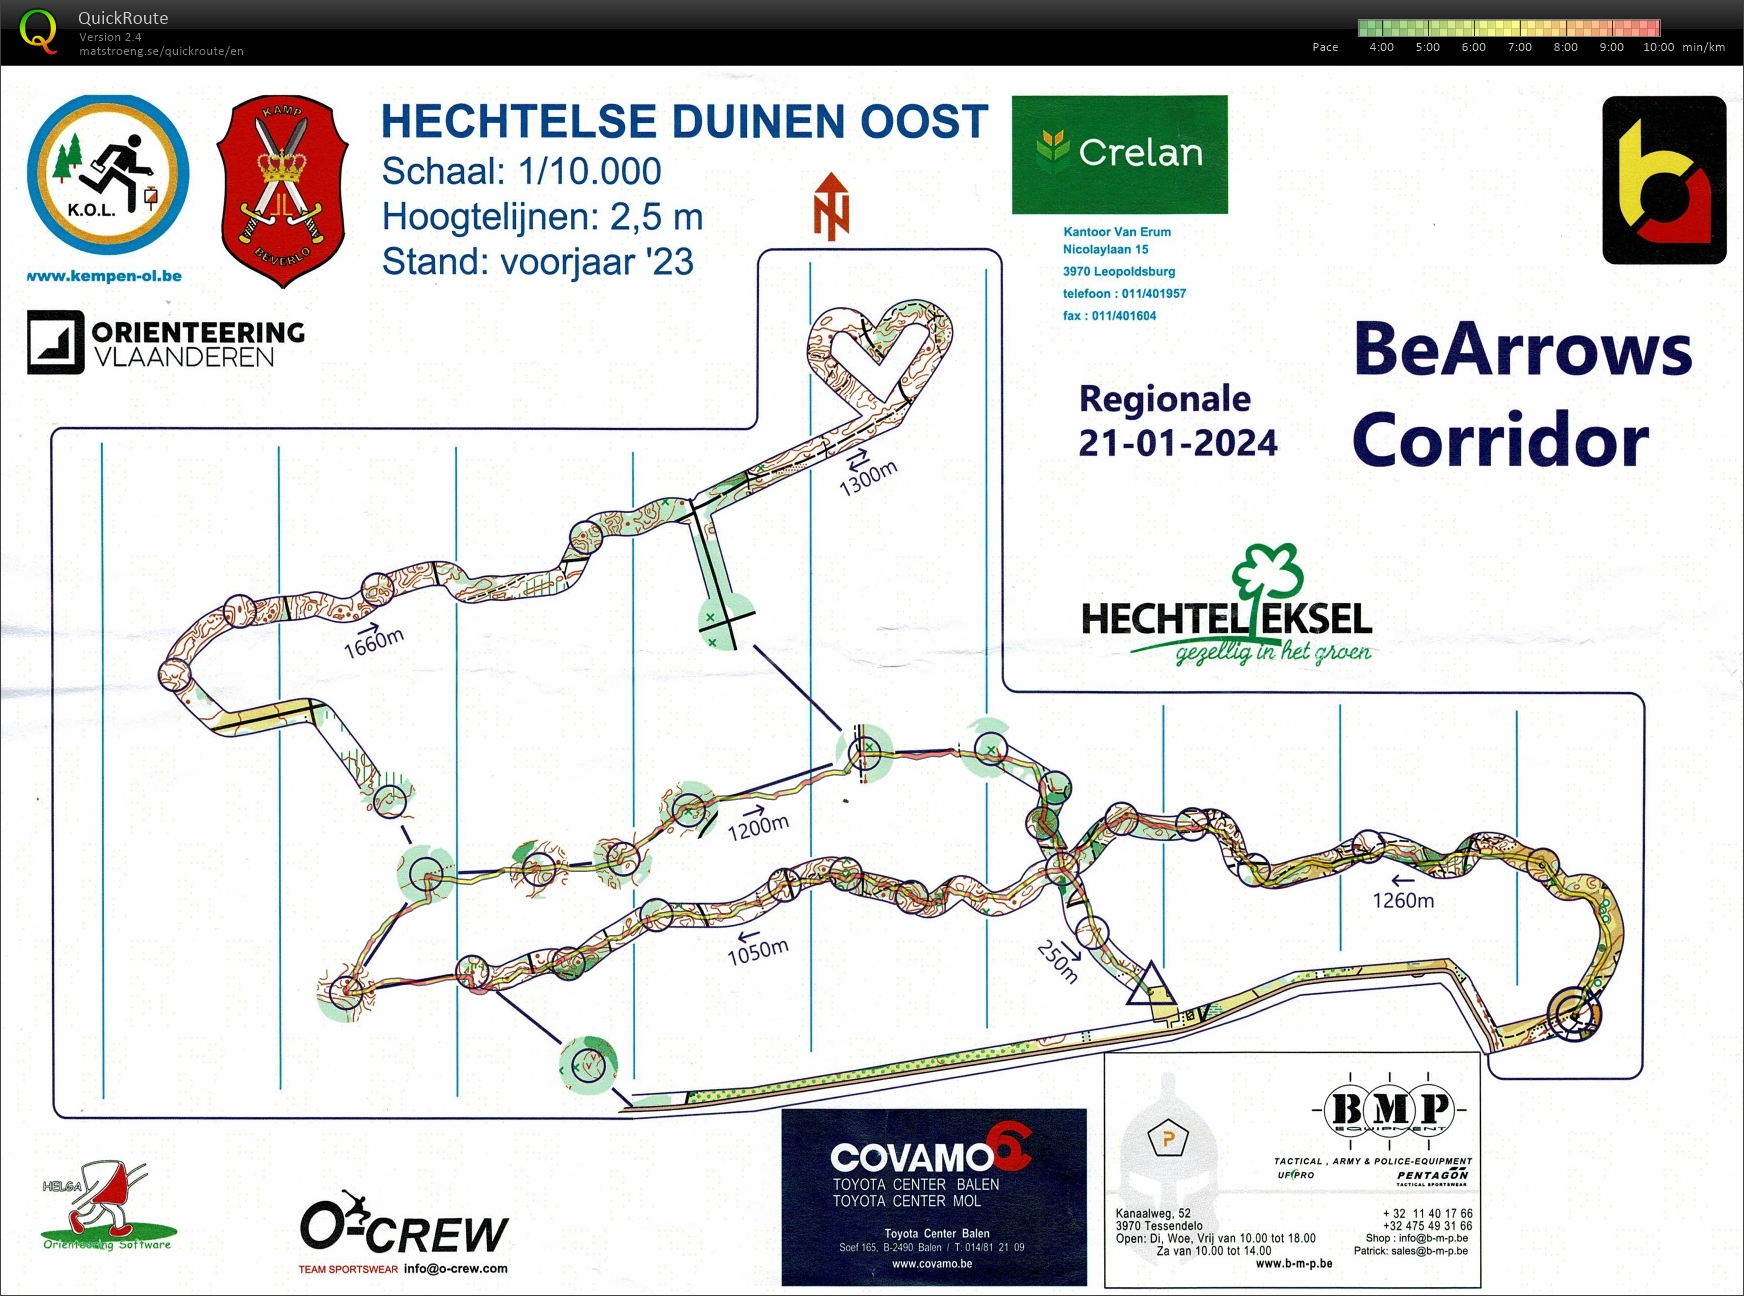 Corridor BeArrows (21/01/2024)